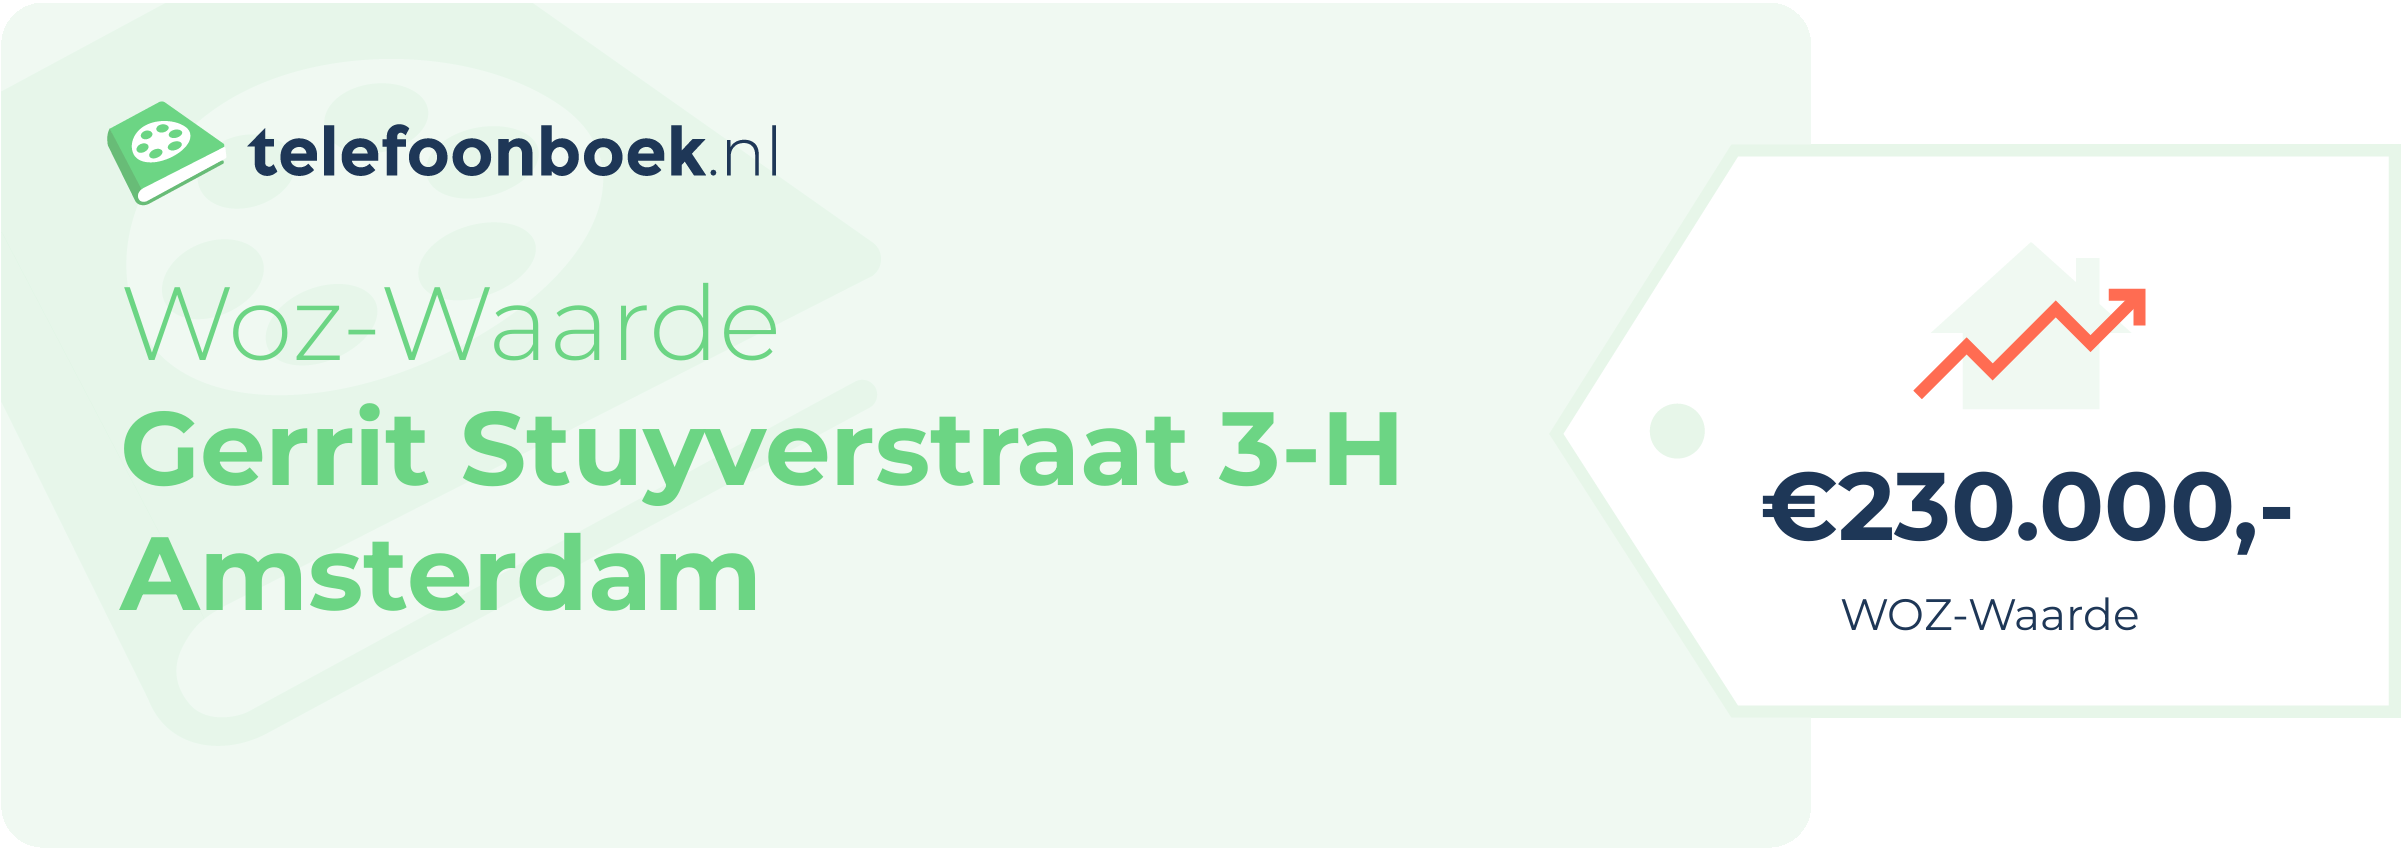 WOZ-waarde Gerrit Stuyverstraat 3-H Amsterdam